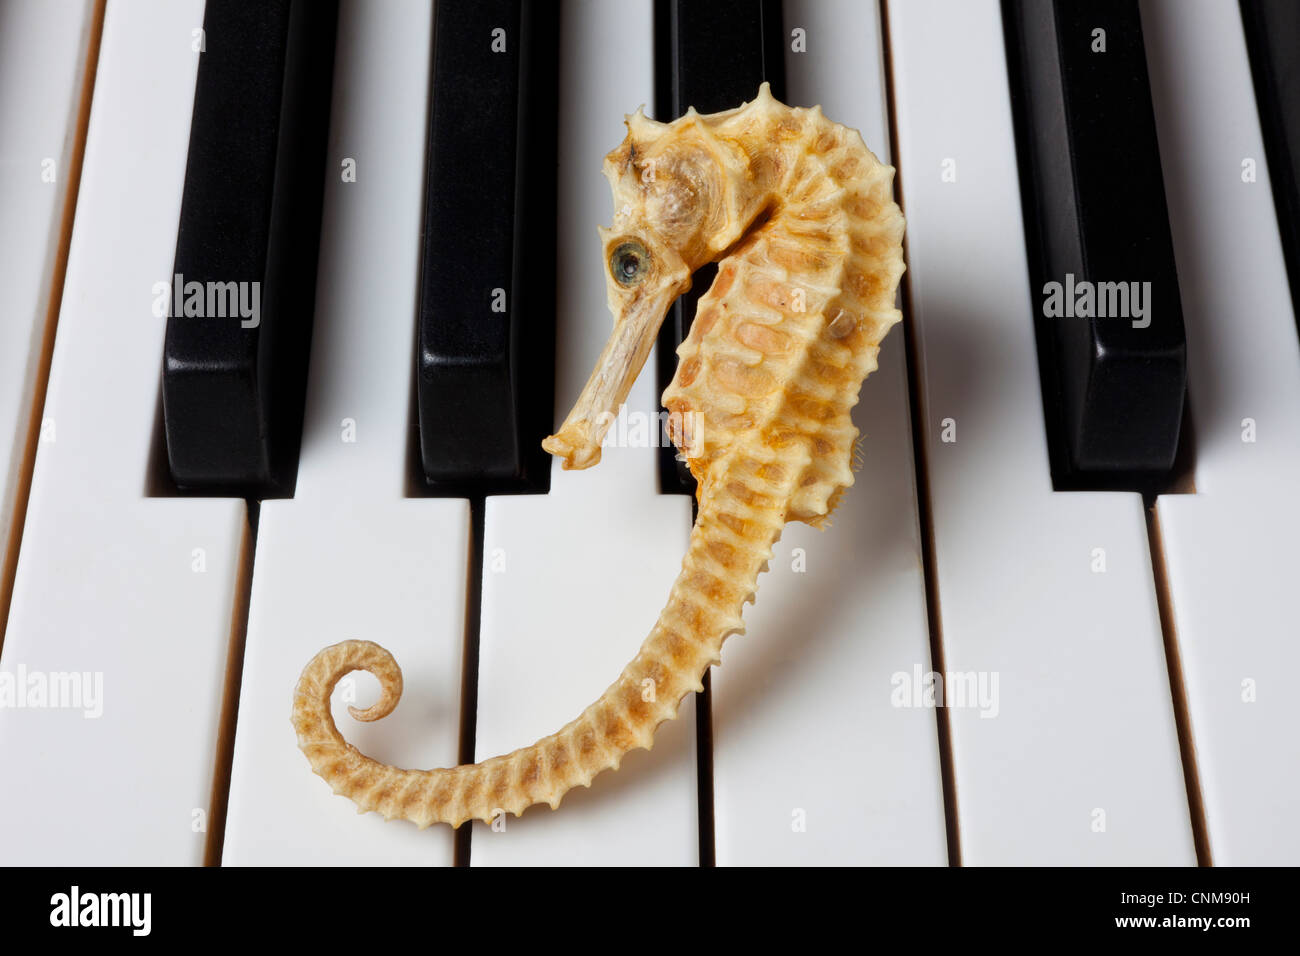 Seahorse on piano keys Stock Photo